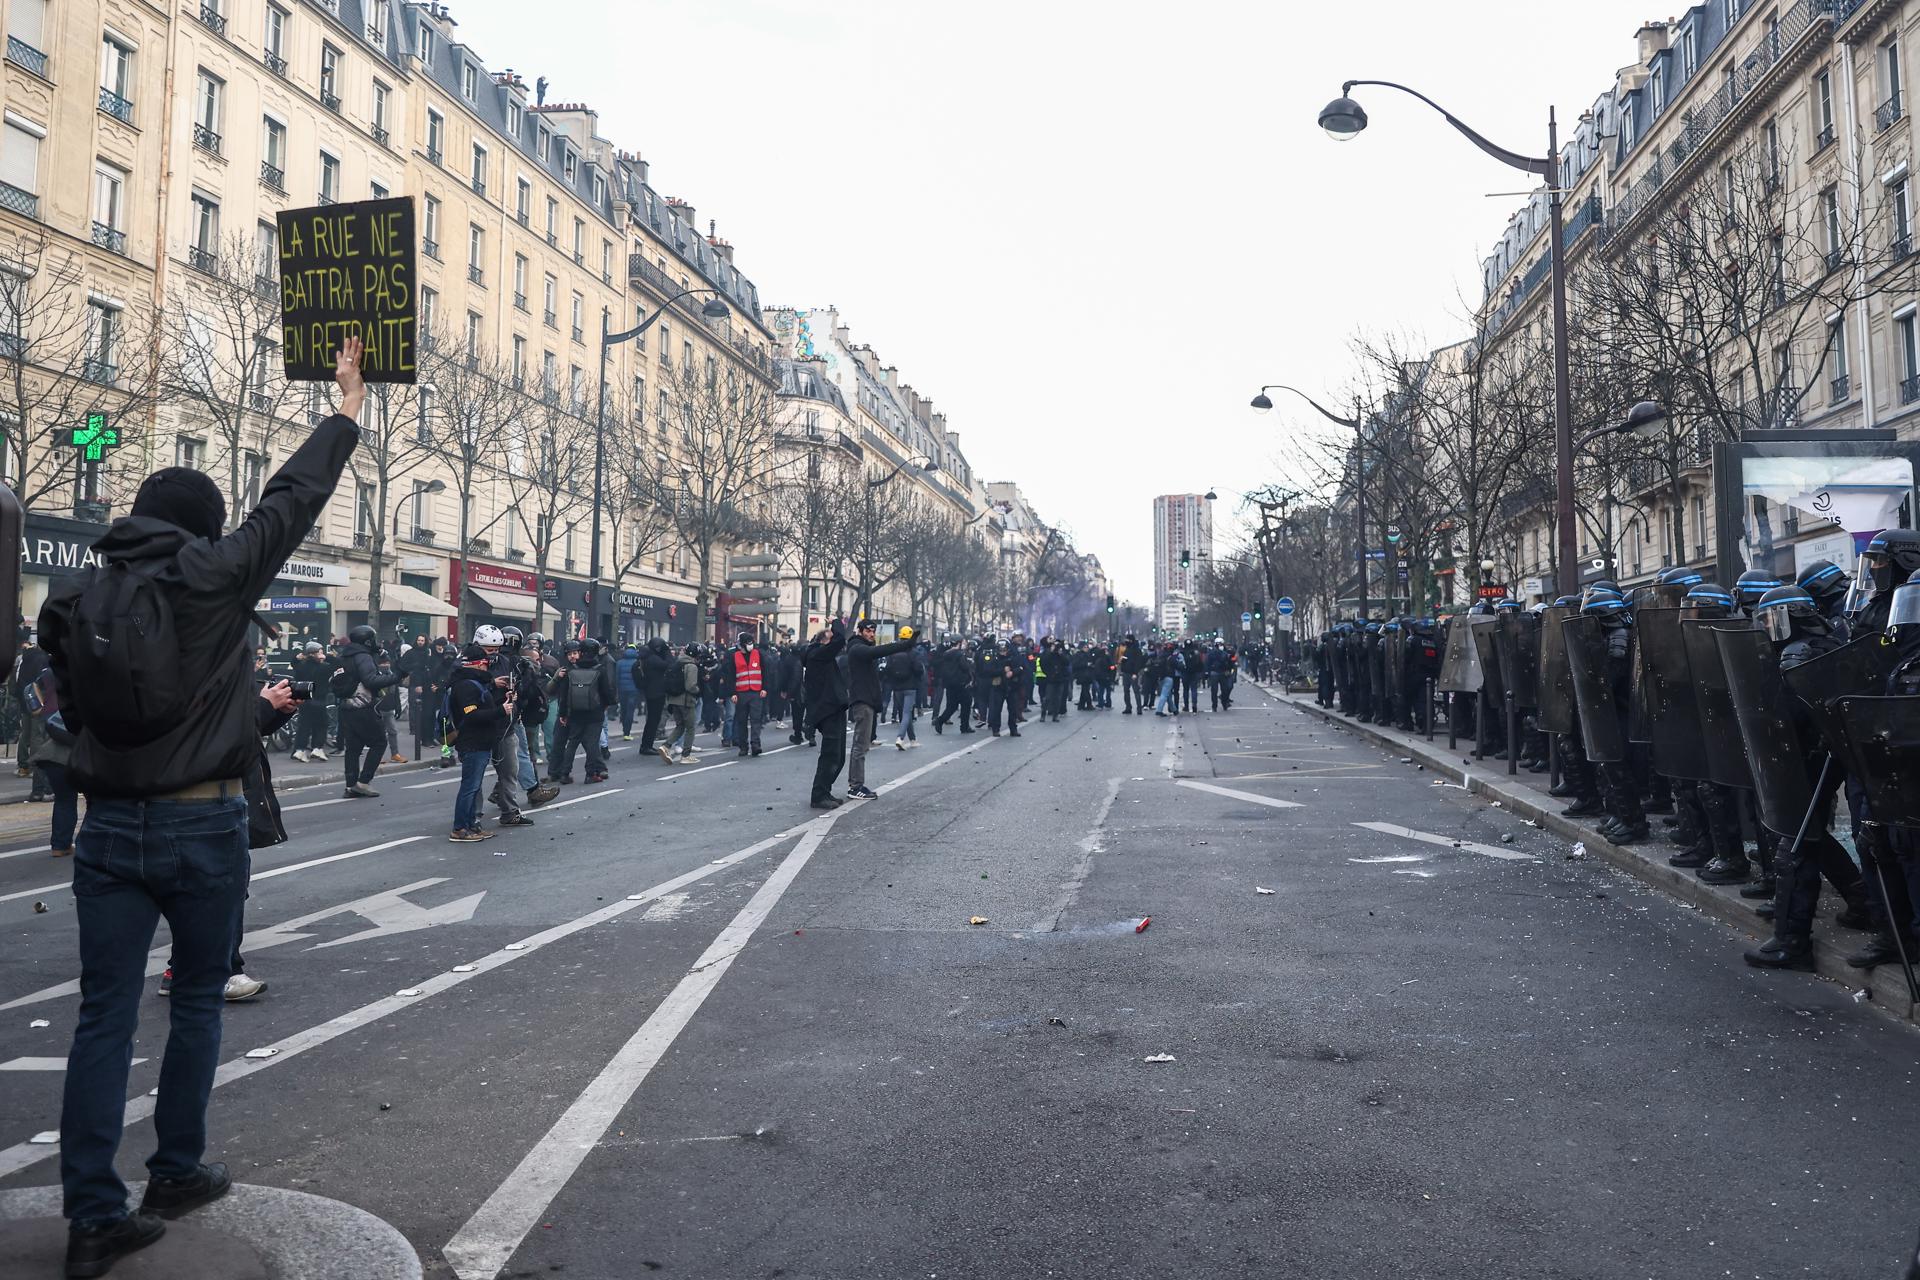 FOTO REFERENCIAL - París (Francia), 07/03/2023.- Fuerzas policiales francesas se enfrentan a manifestantes durante una protesta contra la reforma del sistema de pensiones prevista por el gobierno francés, en París (Francia), 07 de marzo de 2023. (Protestas, Francia) EFE/EPA/MOHAMMED BADRA.